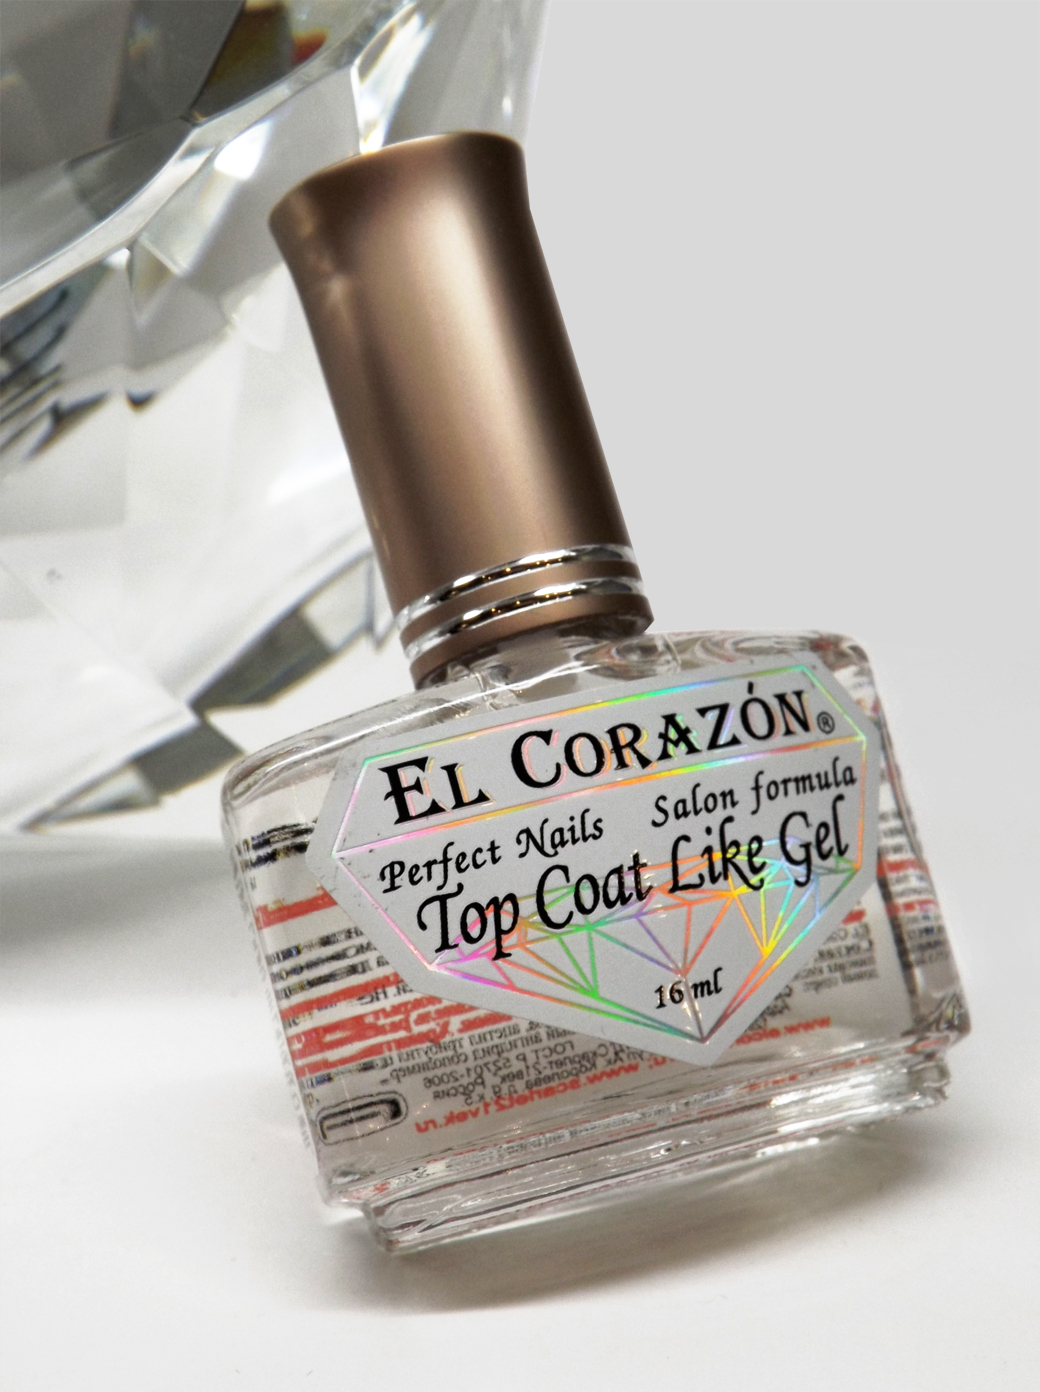 EL Corazon Perfect Nails 434 Top Coat Like Gel-Верхнее покрытие и закрепитель как ГЕЛЬ-ТОП. Визуальный эффект гелевых ногтей